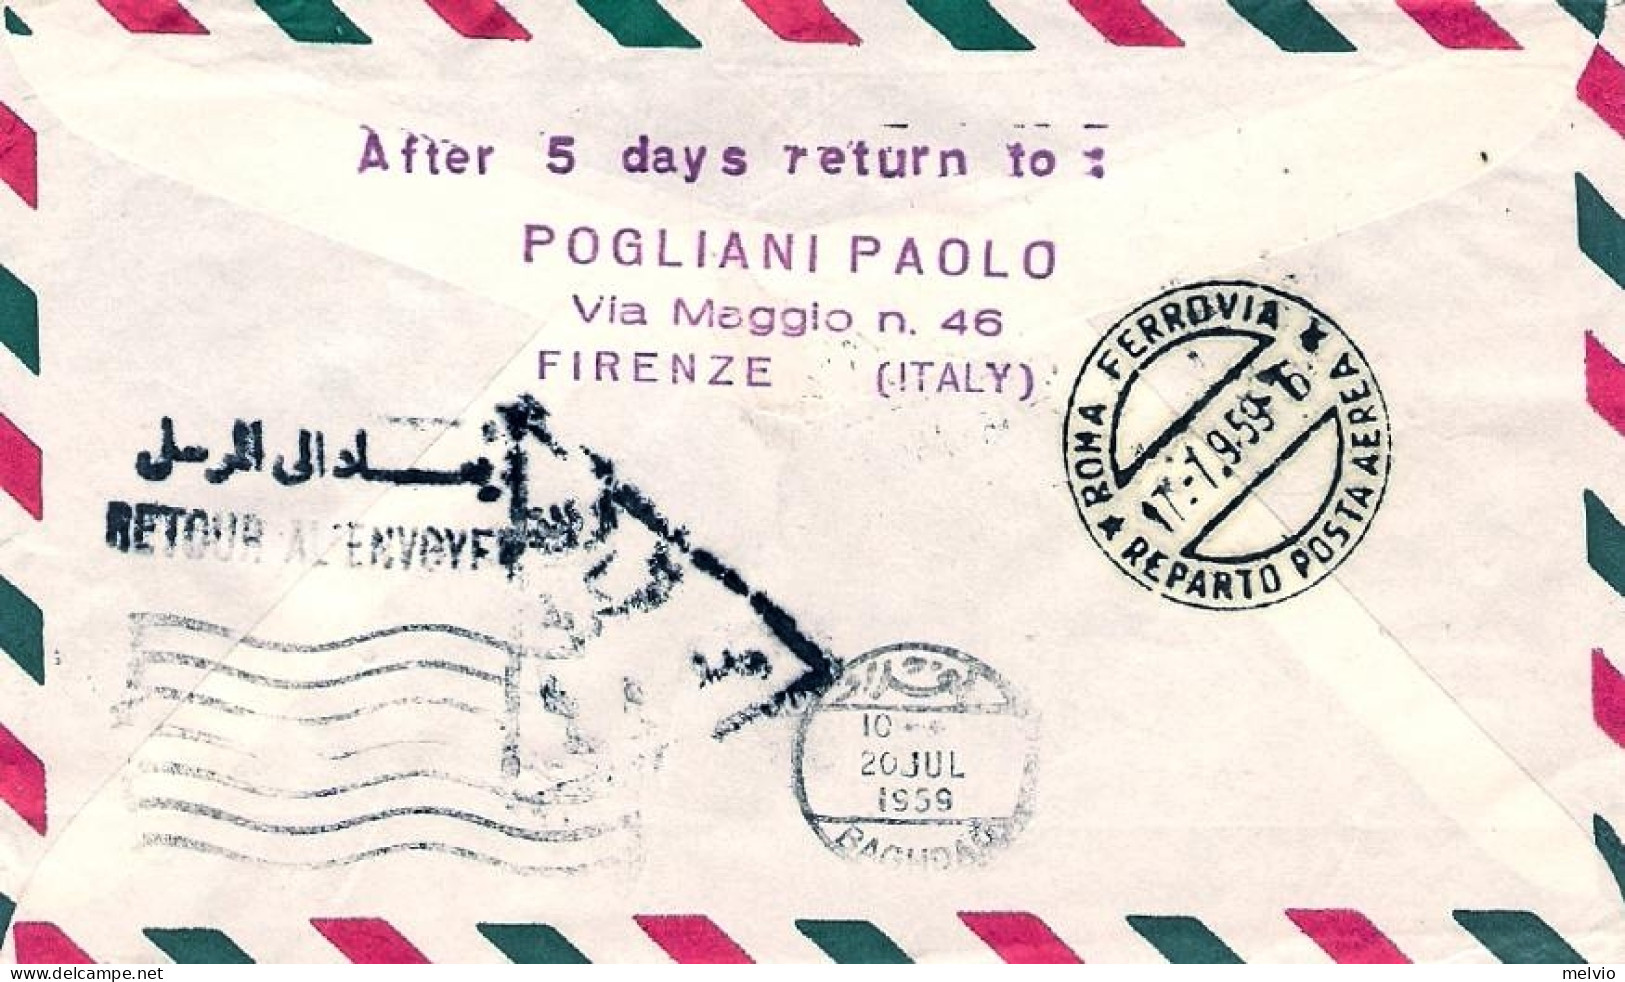 Vaticano-1959 Con Erinnofilo I^volo Caravelle Roma Baghdad (30 Pezzi Trasportati - Airmail